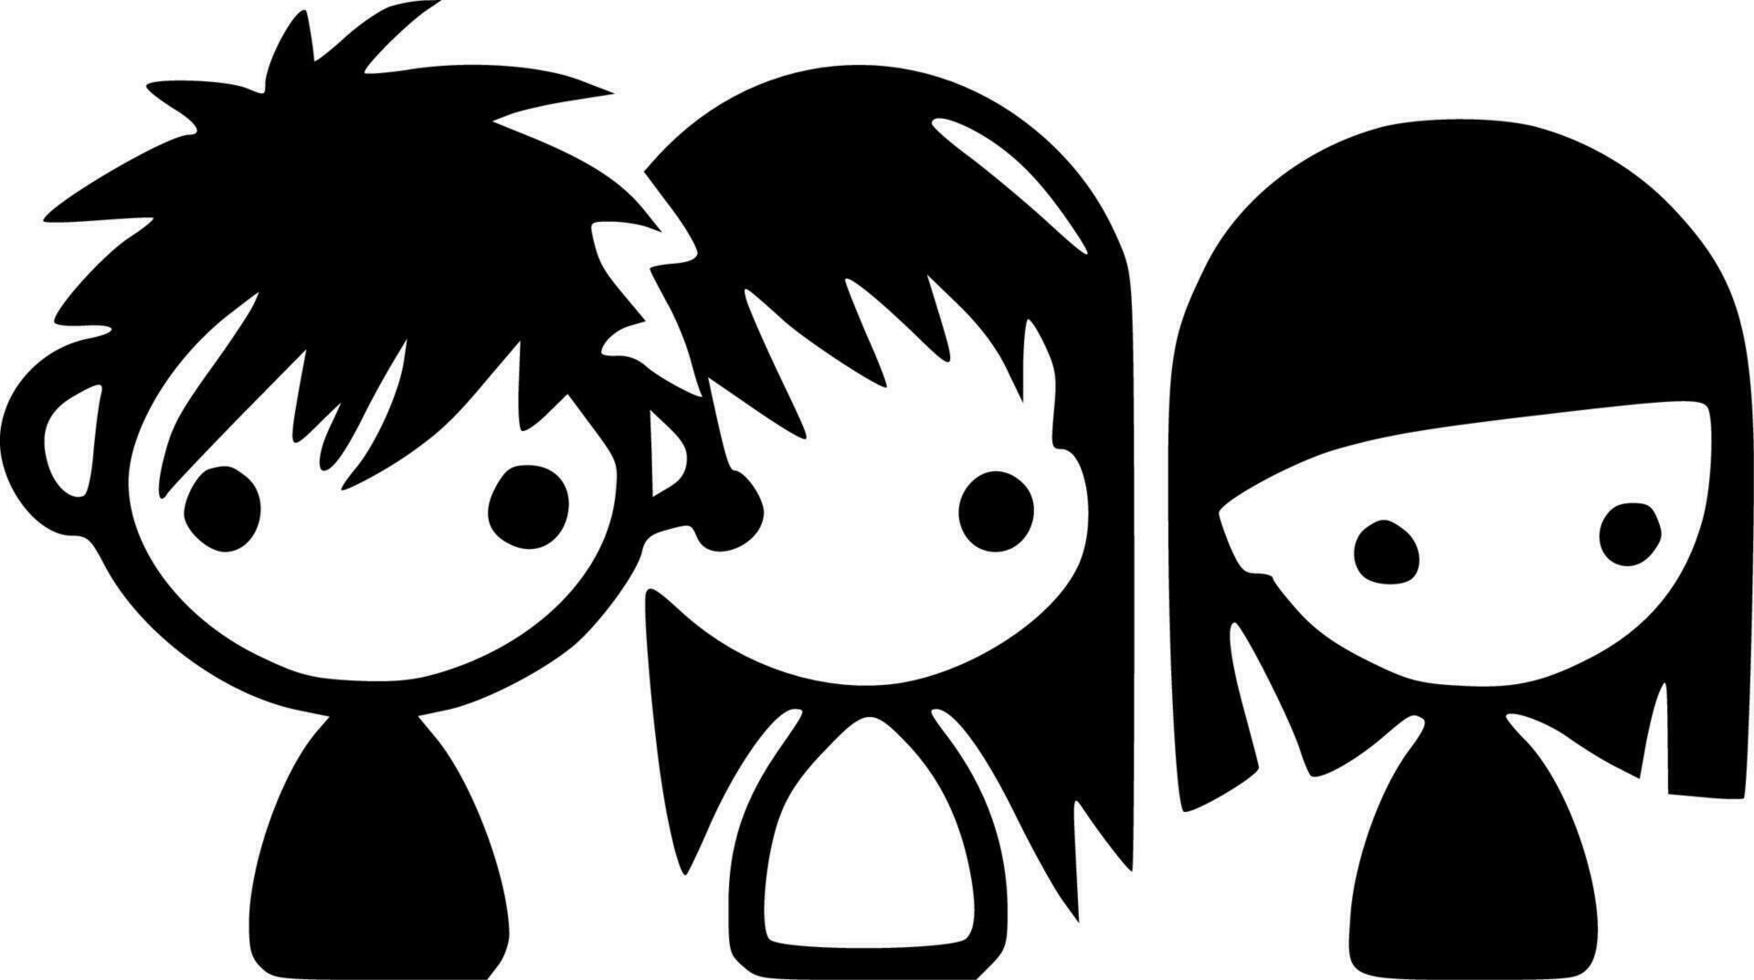 kinderen - zwart en wit geïsoleerd icoon - vector illustratie